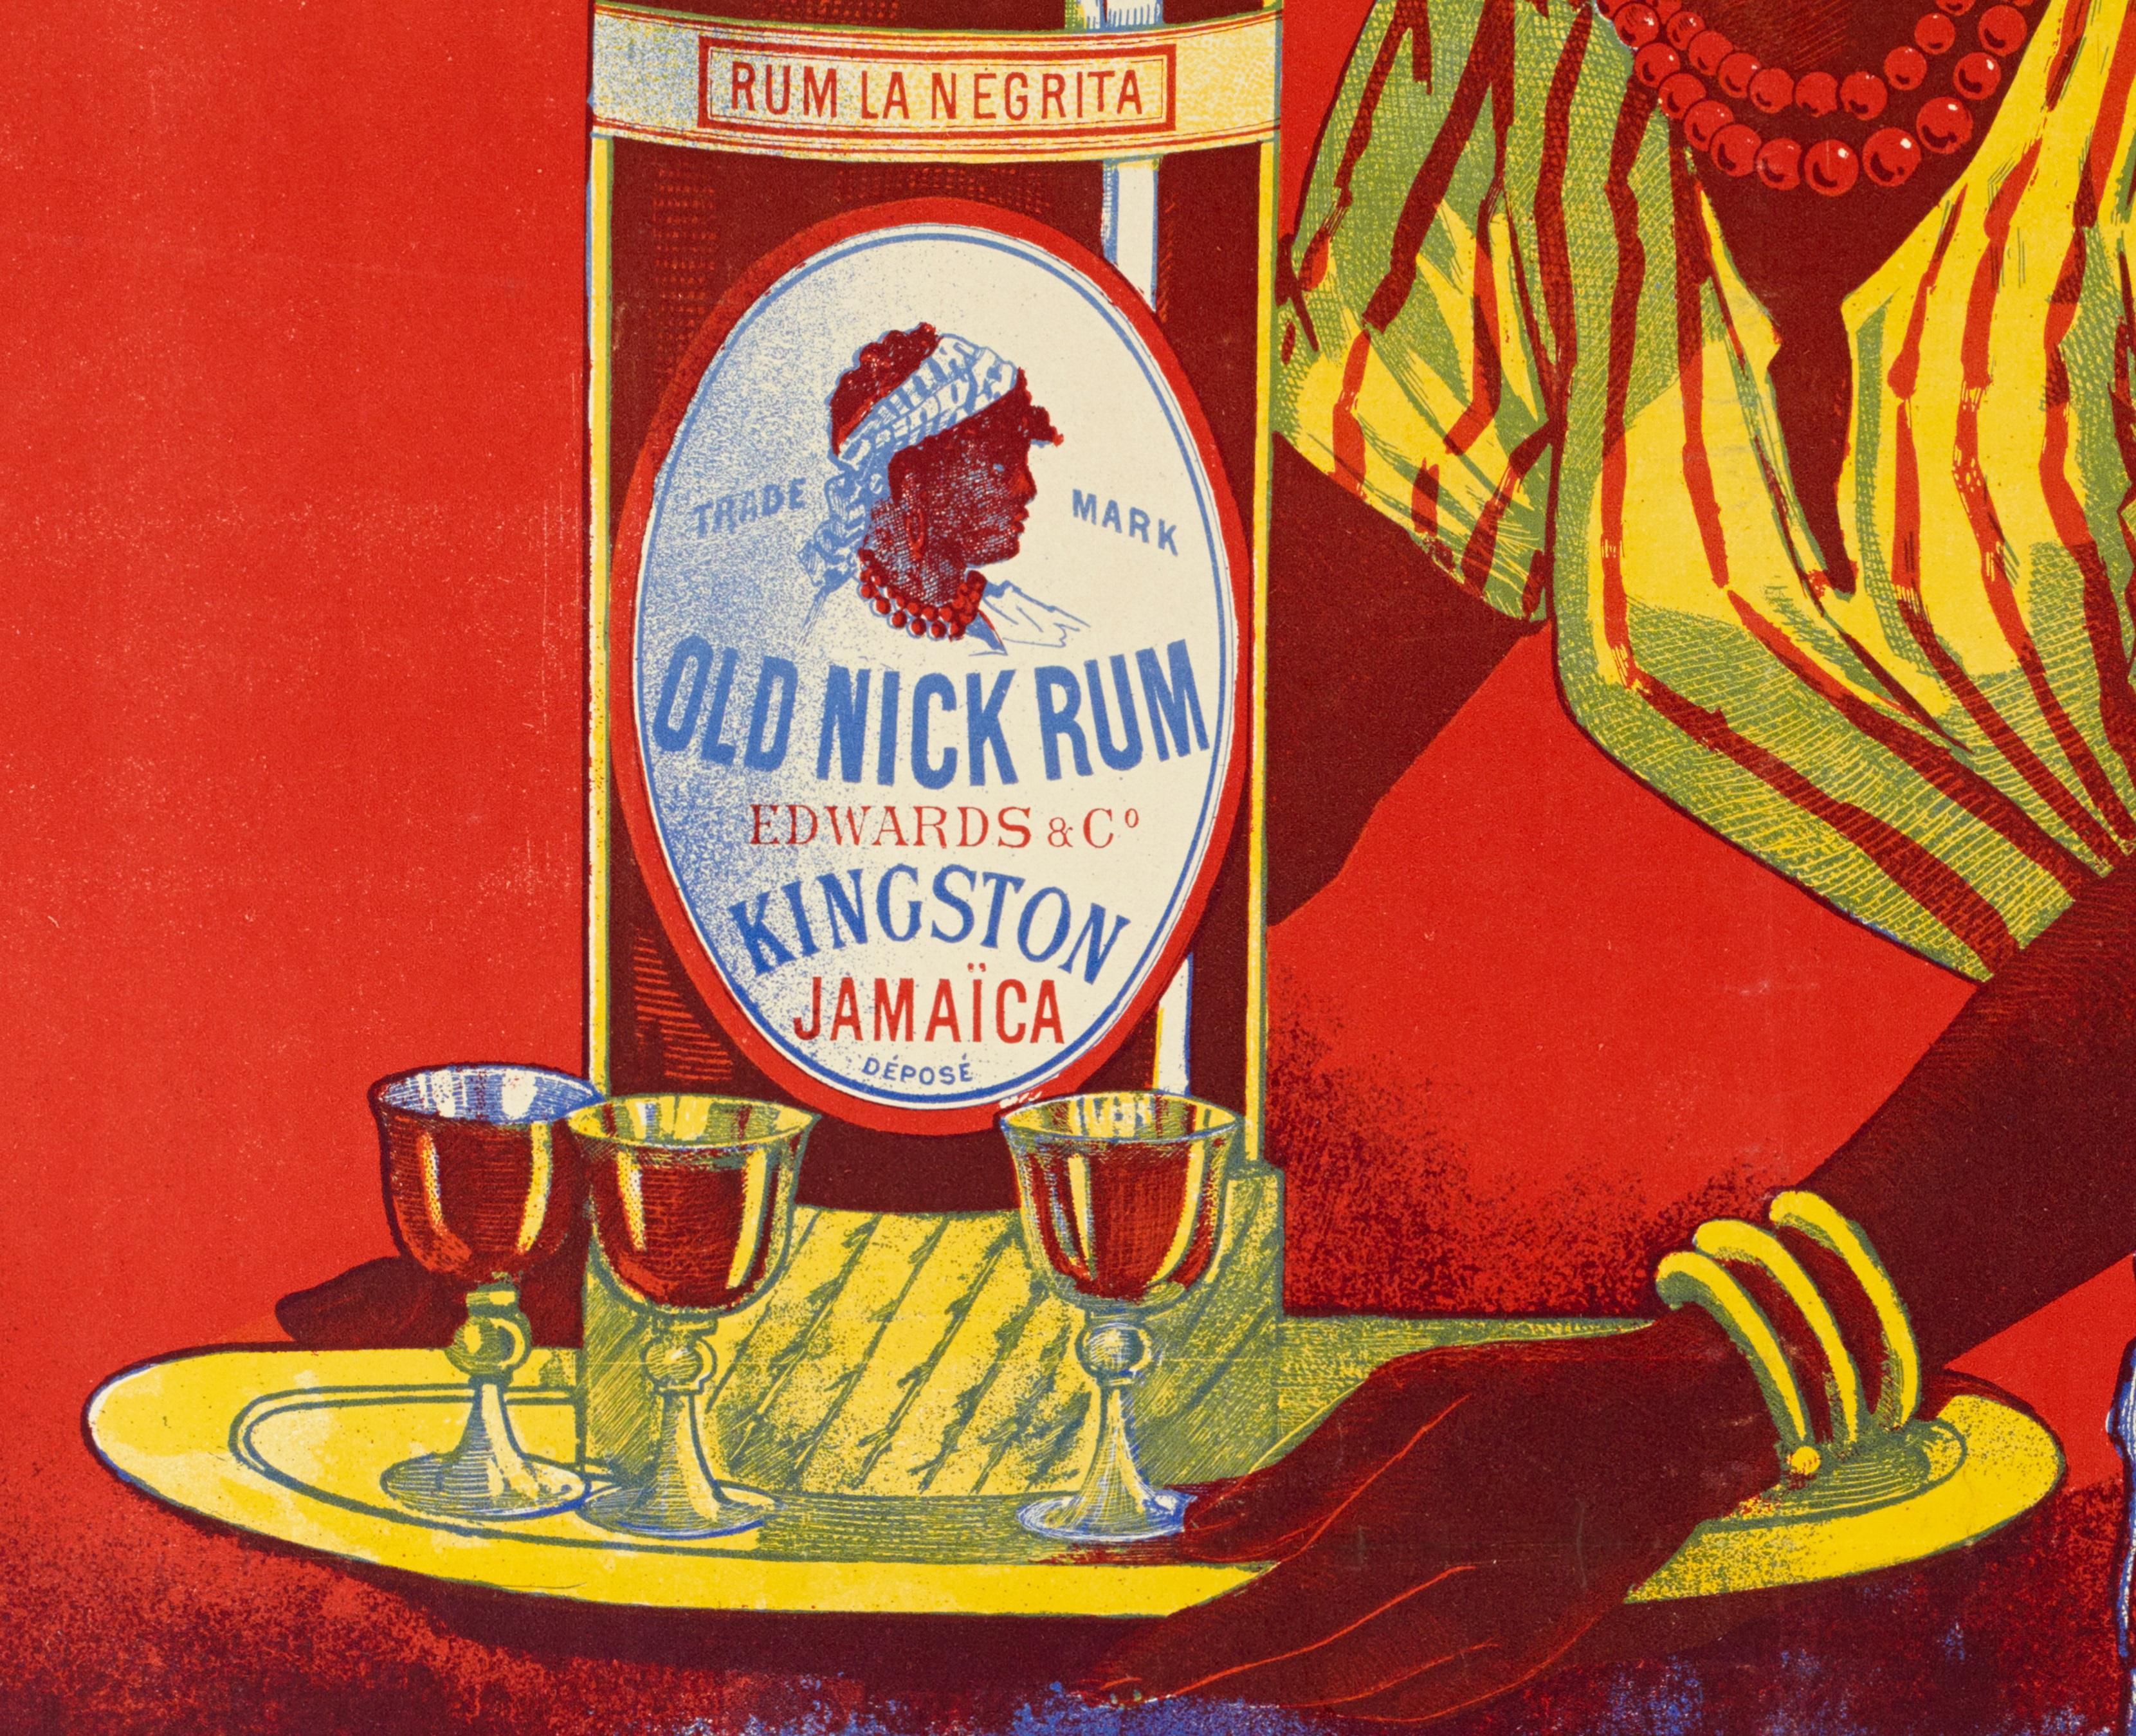 Original poster vintage-Rhum Negrita Old Nick-West Indies-Sugar Cane, 1899

On voit une femme de l'ouest de l'Inde dans une tenue rayée. Elle tient dans ses mains un plateau sur lequel est posée une bouteille de rhum et trois verres pleins. Le